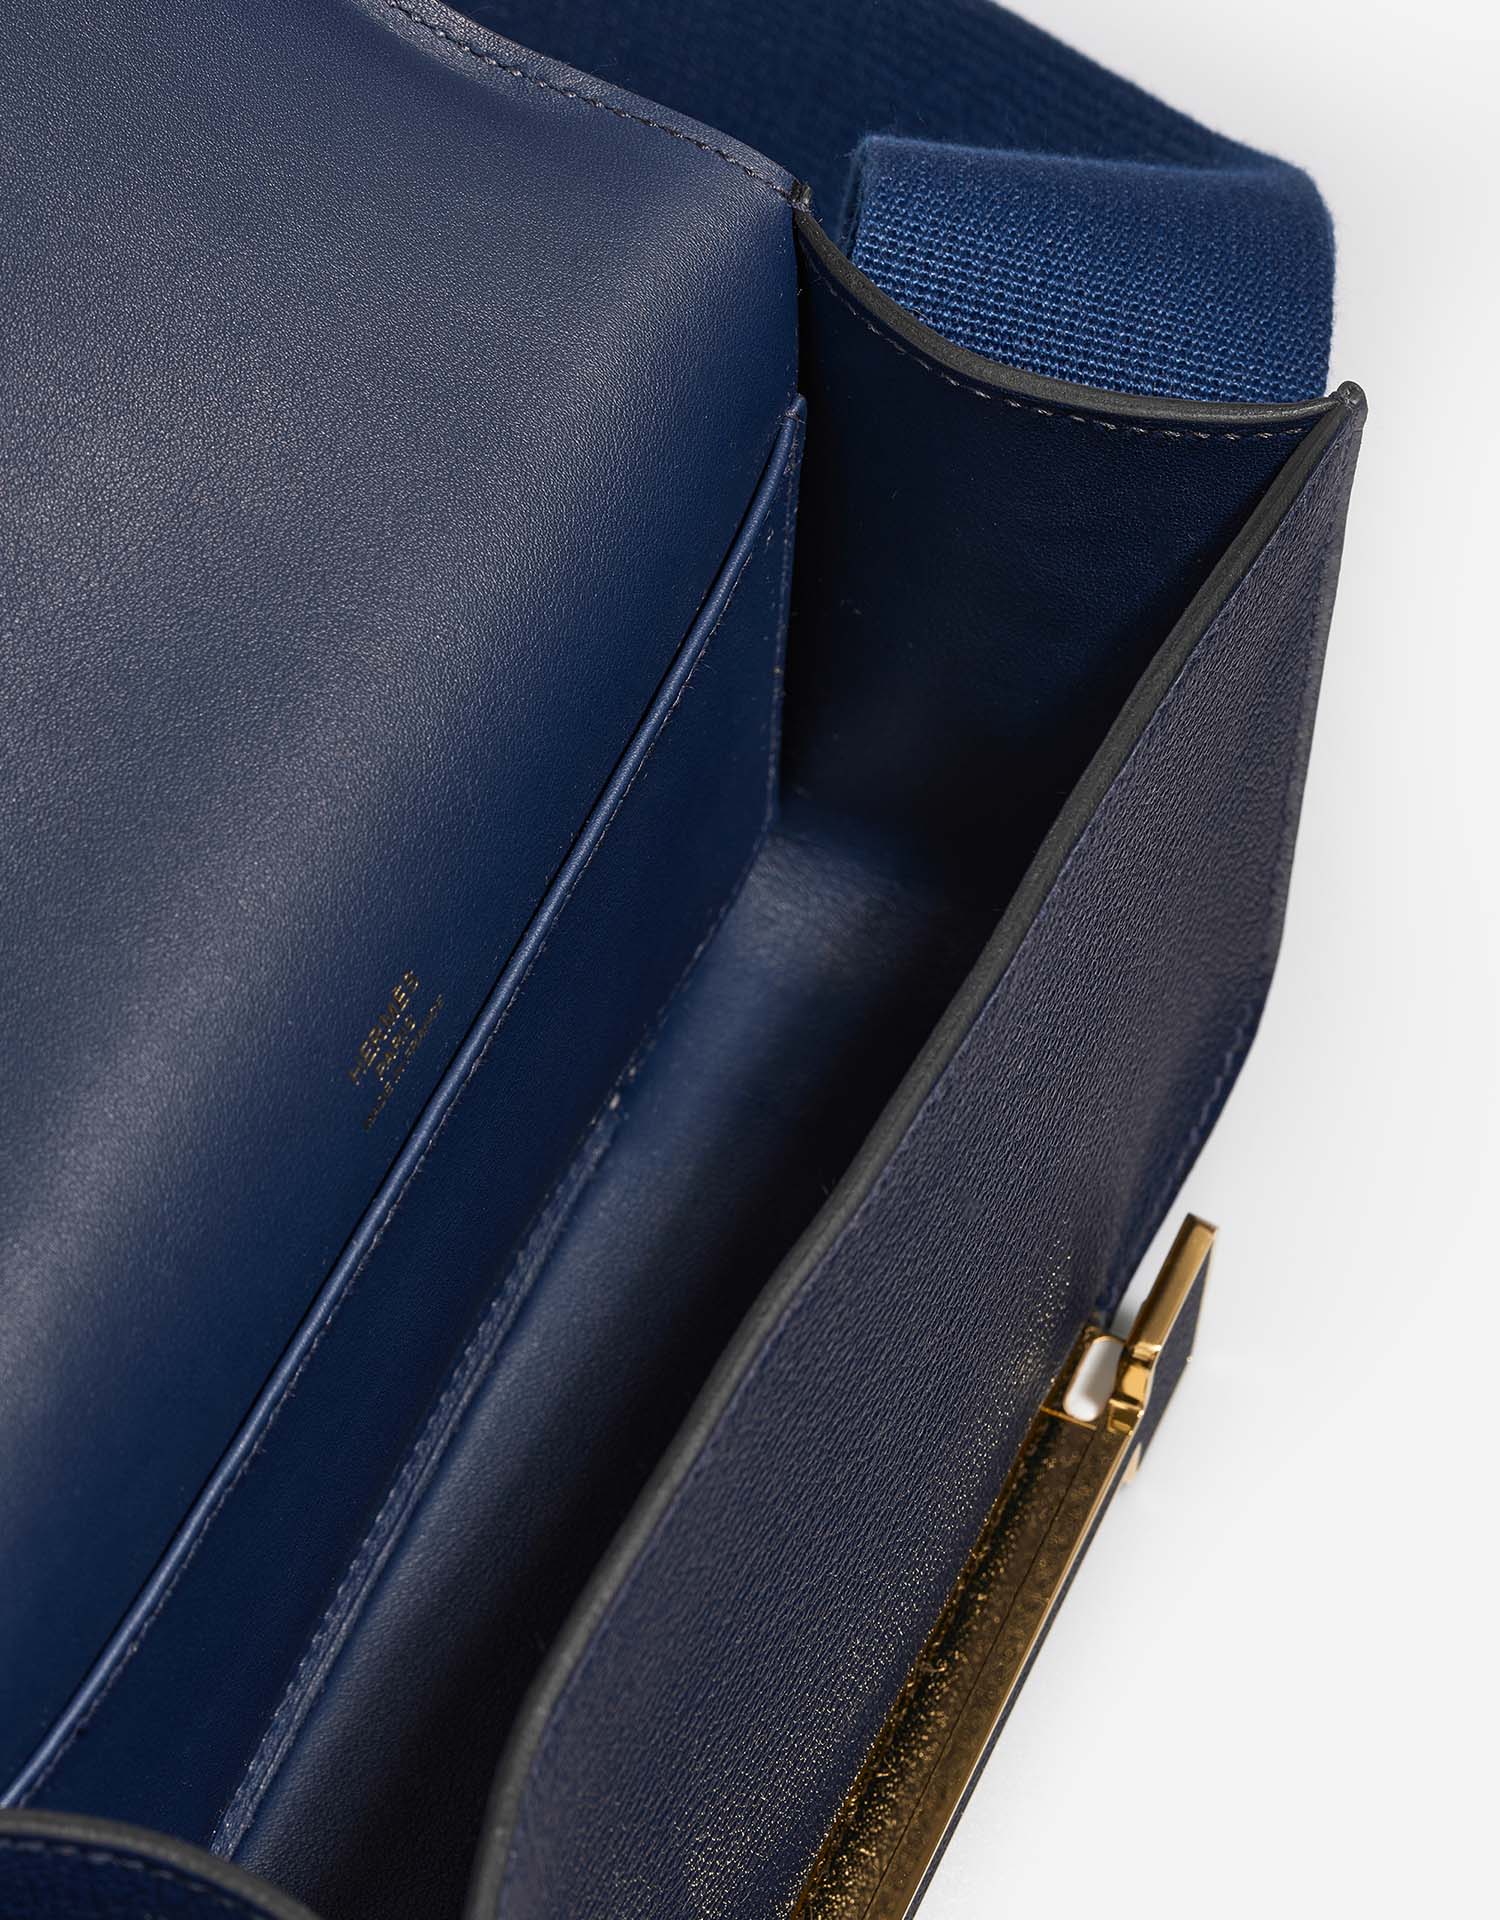 Hermès Geta Navy Inside | Verkaufen Sie Ihre Designer-Tasche auf Saclab.com